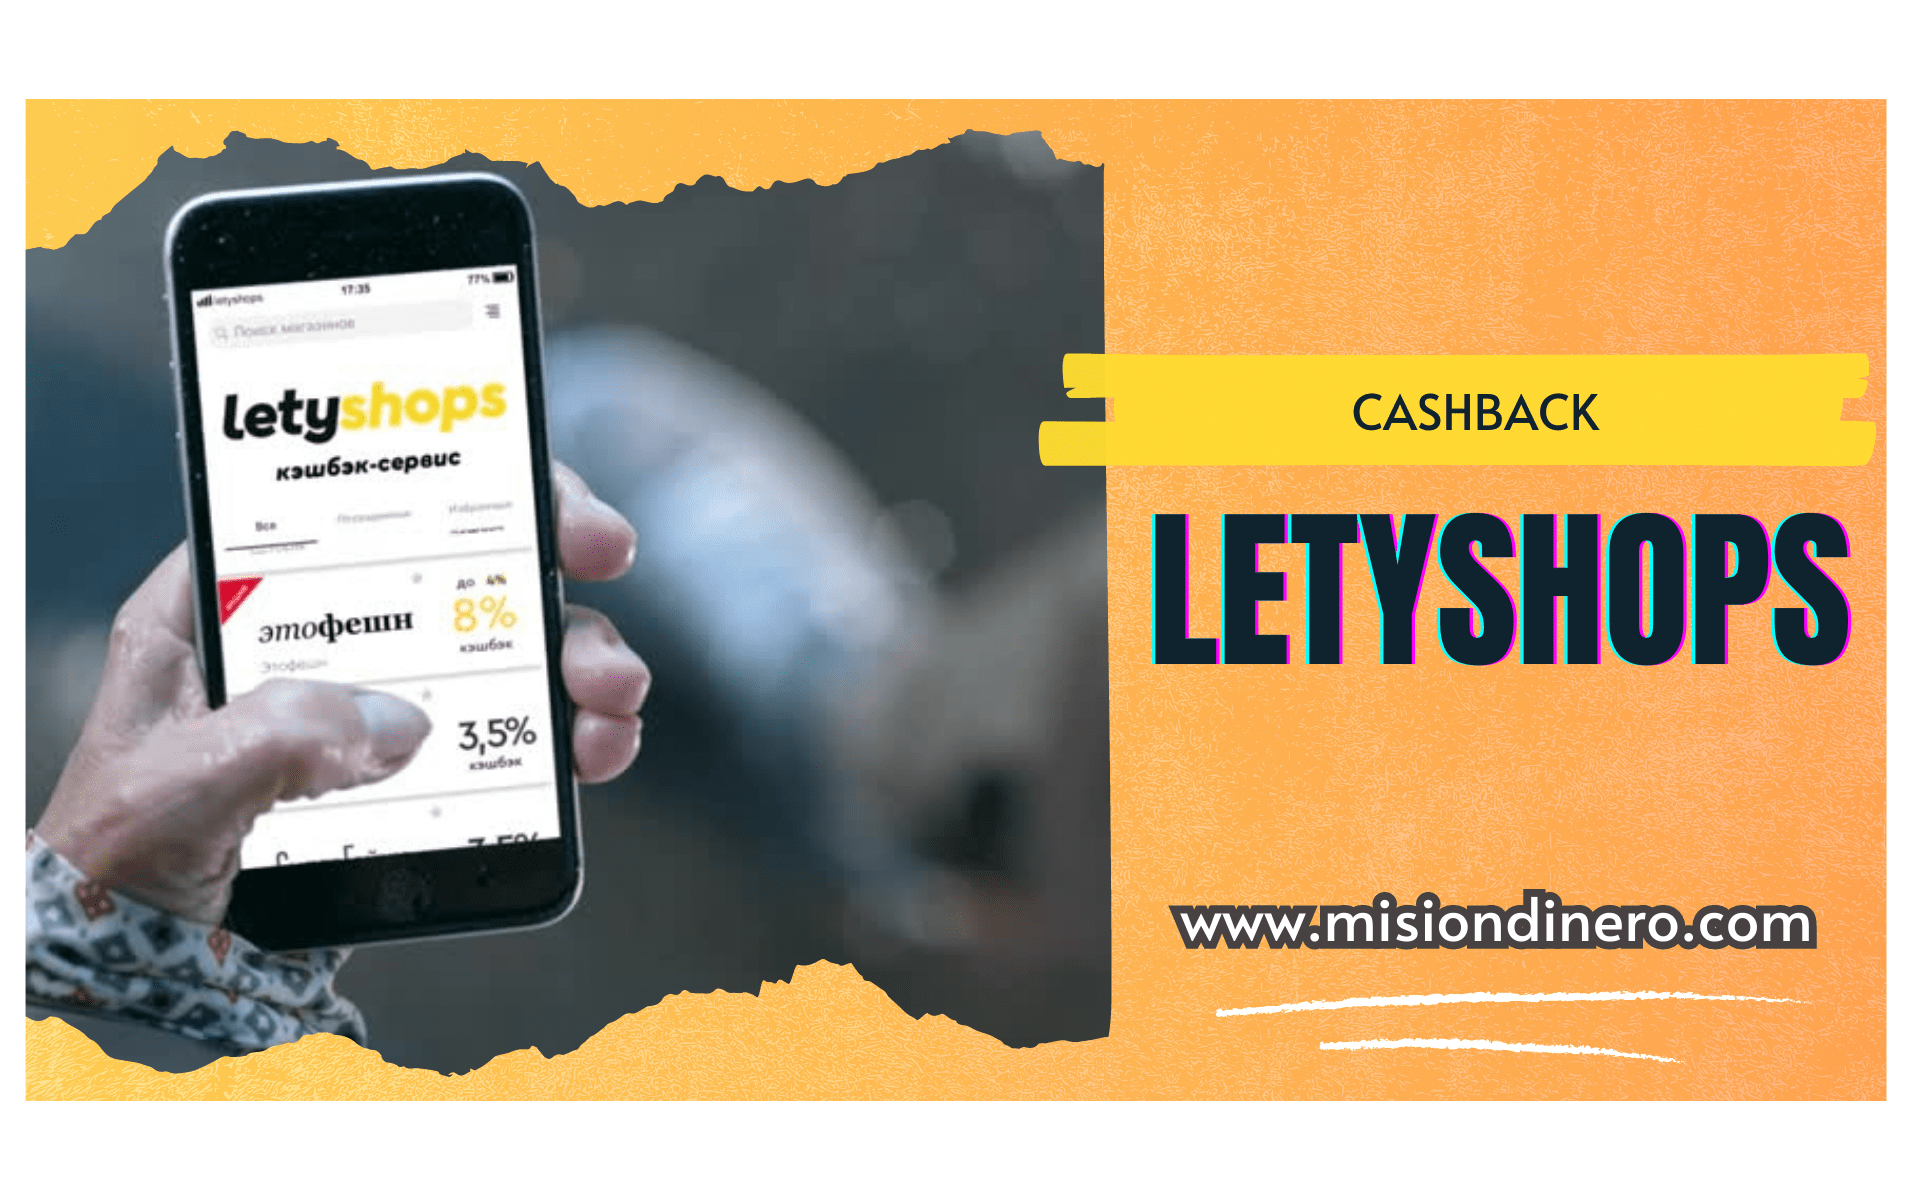 Letyshops: obtén cashback en tus compras con esta plataforma